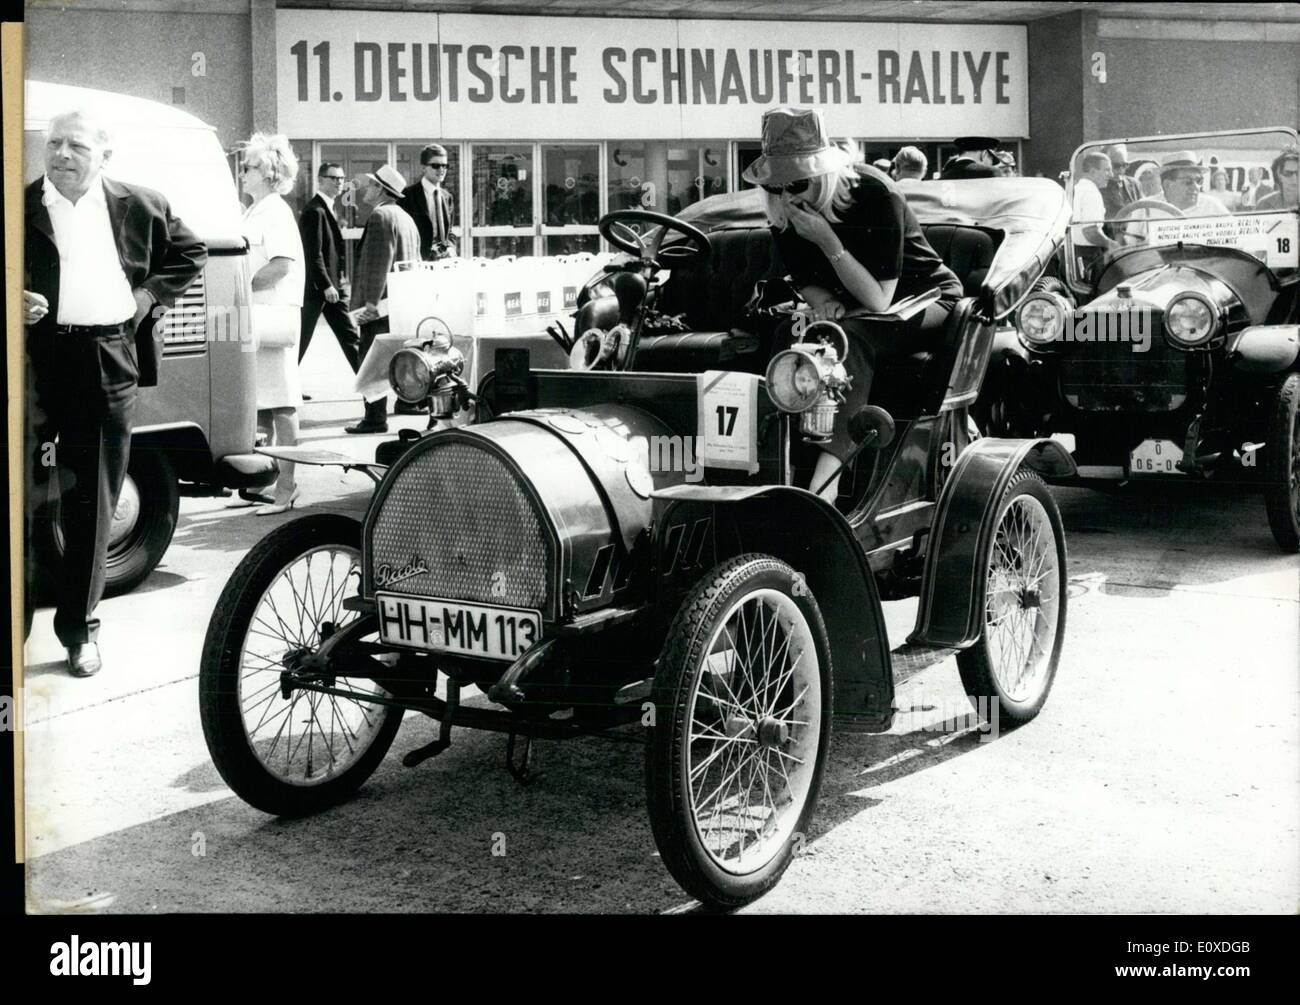 11. Juni 1966 - nahmen 141 Auto-Veteranen an der 11. Schnauferl-Rallye in Berlin. Schnauferl ist eine Form von alten Auto, häufig genannten als Oldtimer. 7 Autos kamen aus vor 1900, 18 zwischen 1901-1908, 15 zwischen 1908-1918, 27 zwischen 1918-1925, 54 zwischen 1925-1930, und der Rest aus jüngerer Zeit. 51 Teilnehmer waren fremd. Der Verlauf des Rennens lief im gesamten Berliner Stadtgebiet. Hier abgebildet ist eines der Autos vor dem Start des Rennens. Stockfoto